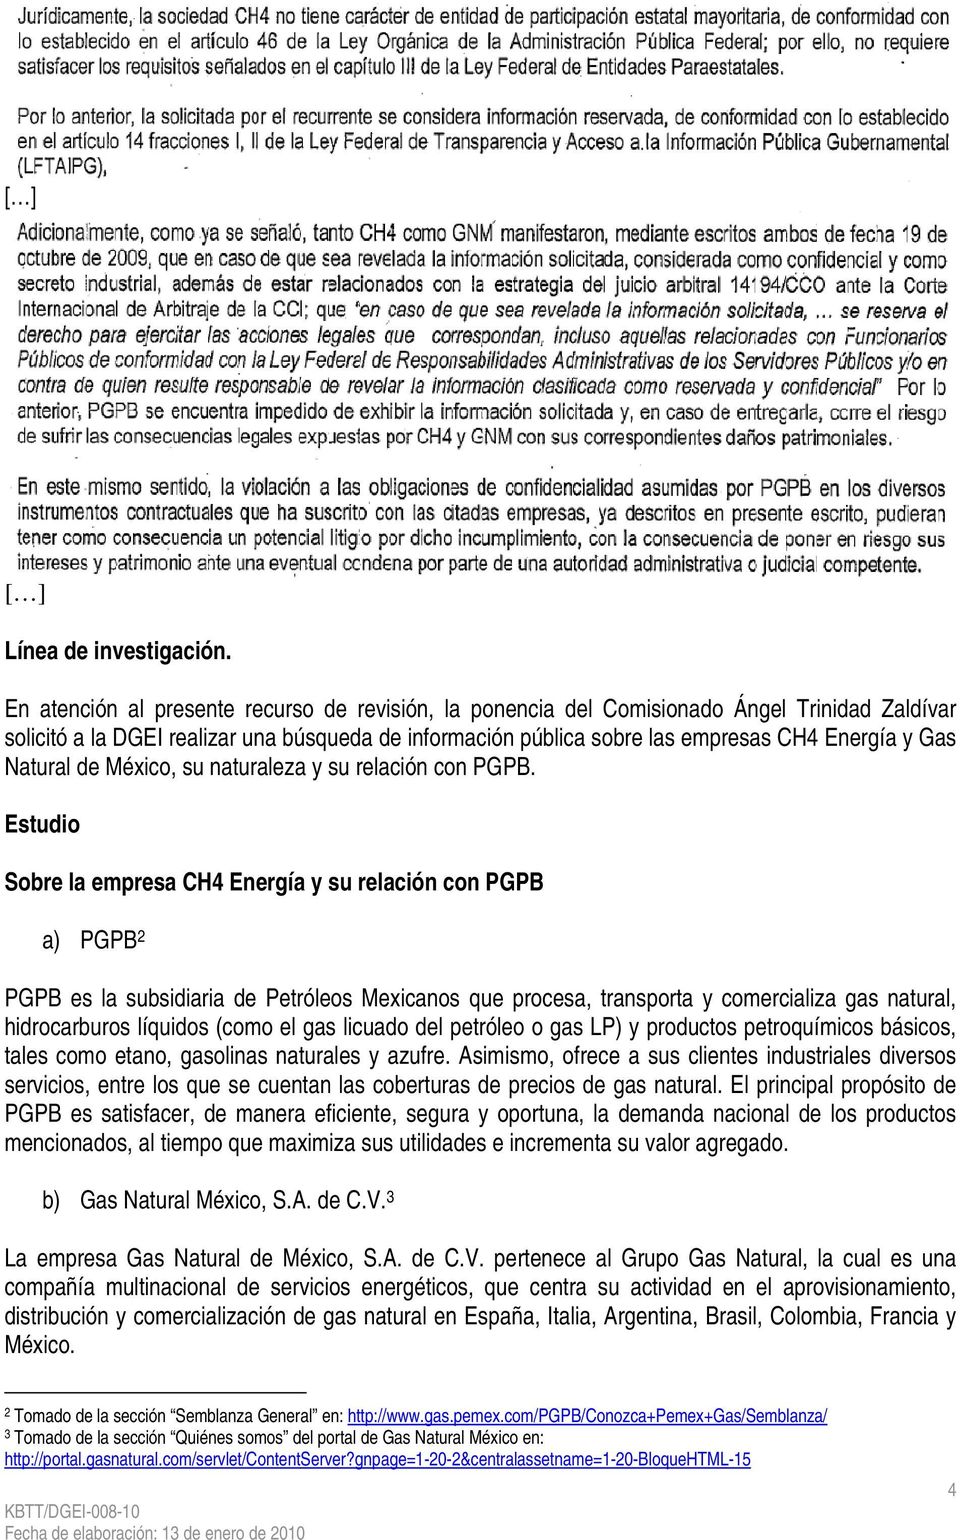 Natural de México, su naturaleza y su relación con PGPB.